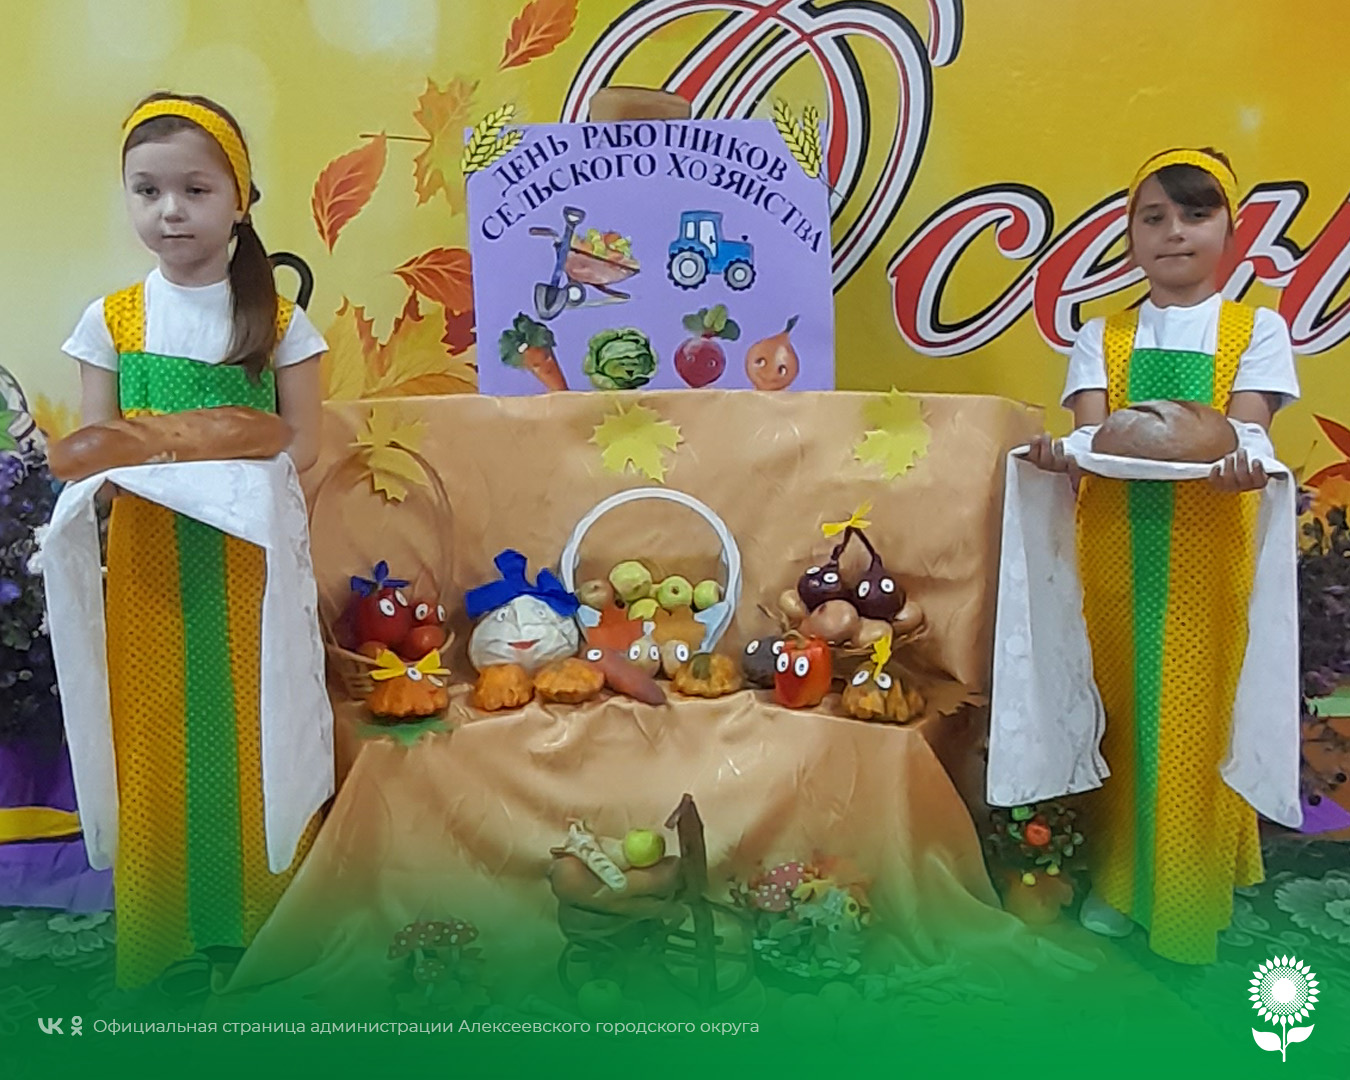 В детских садах Алексеевского городского округа отметили замечательный праздник работников сельского хозяйства